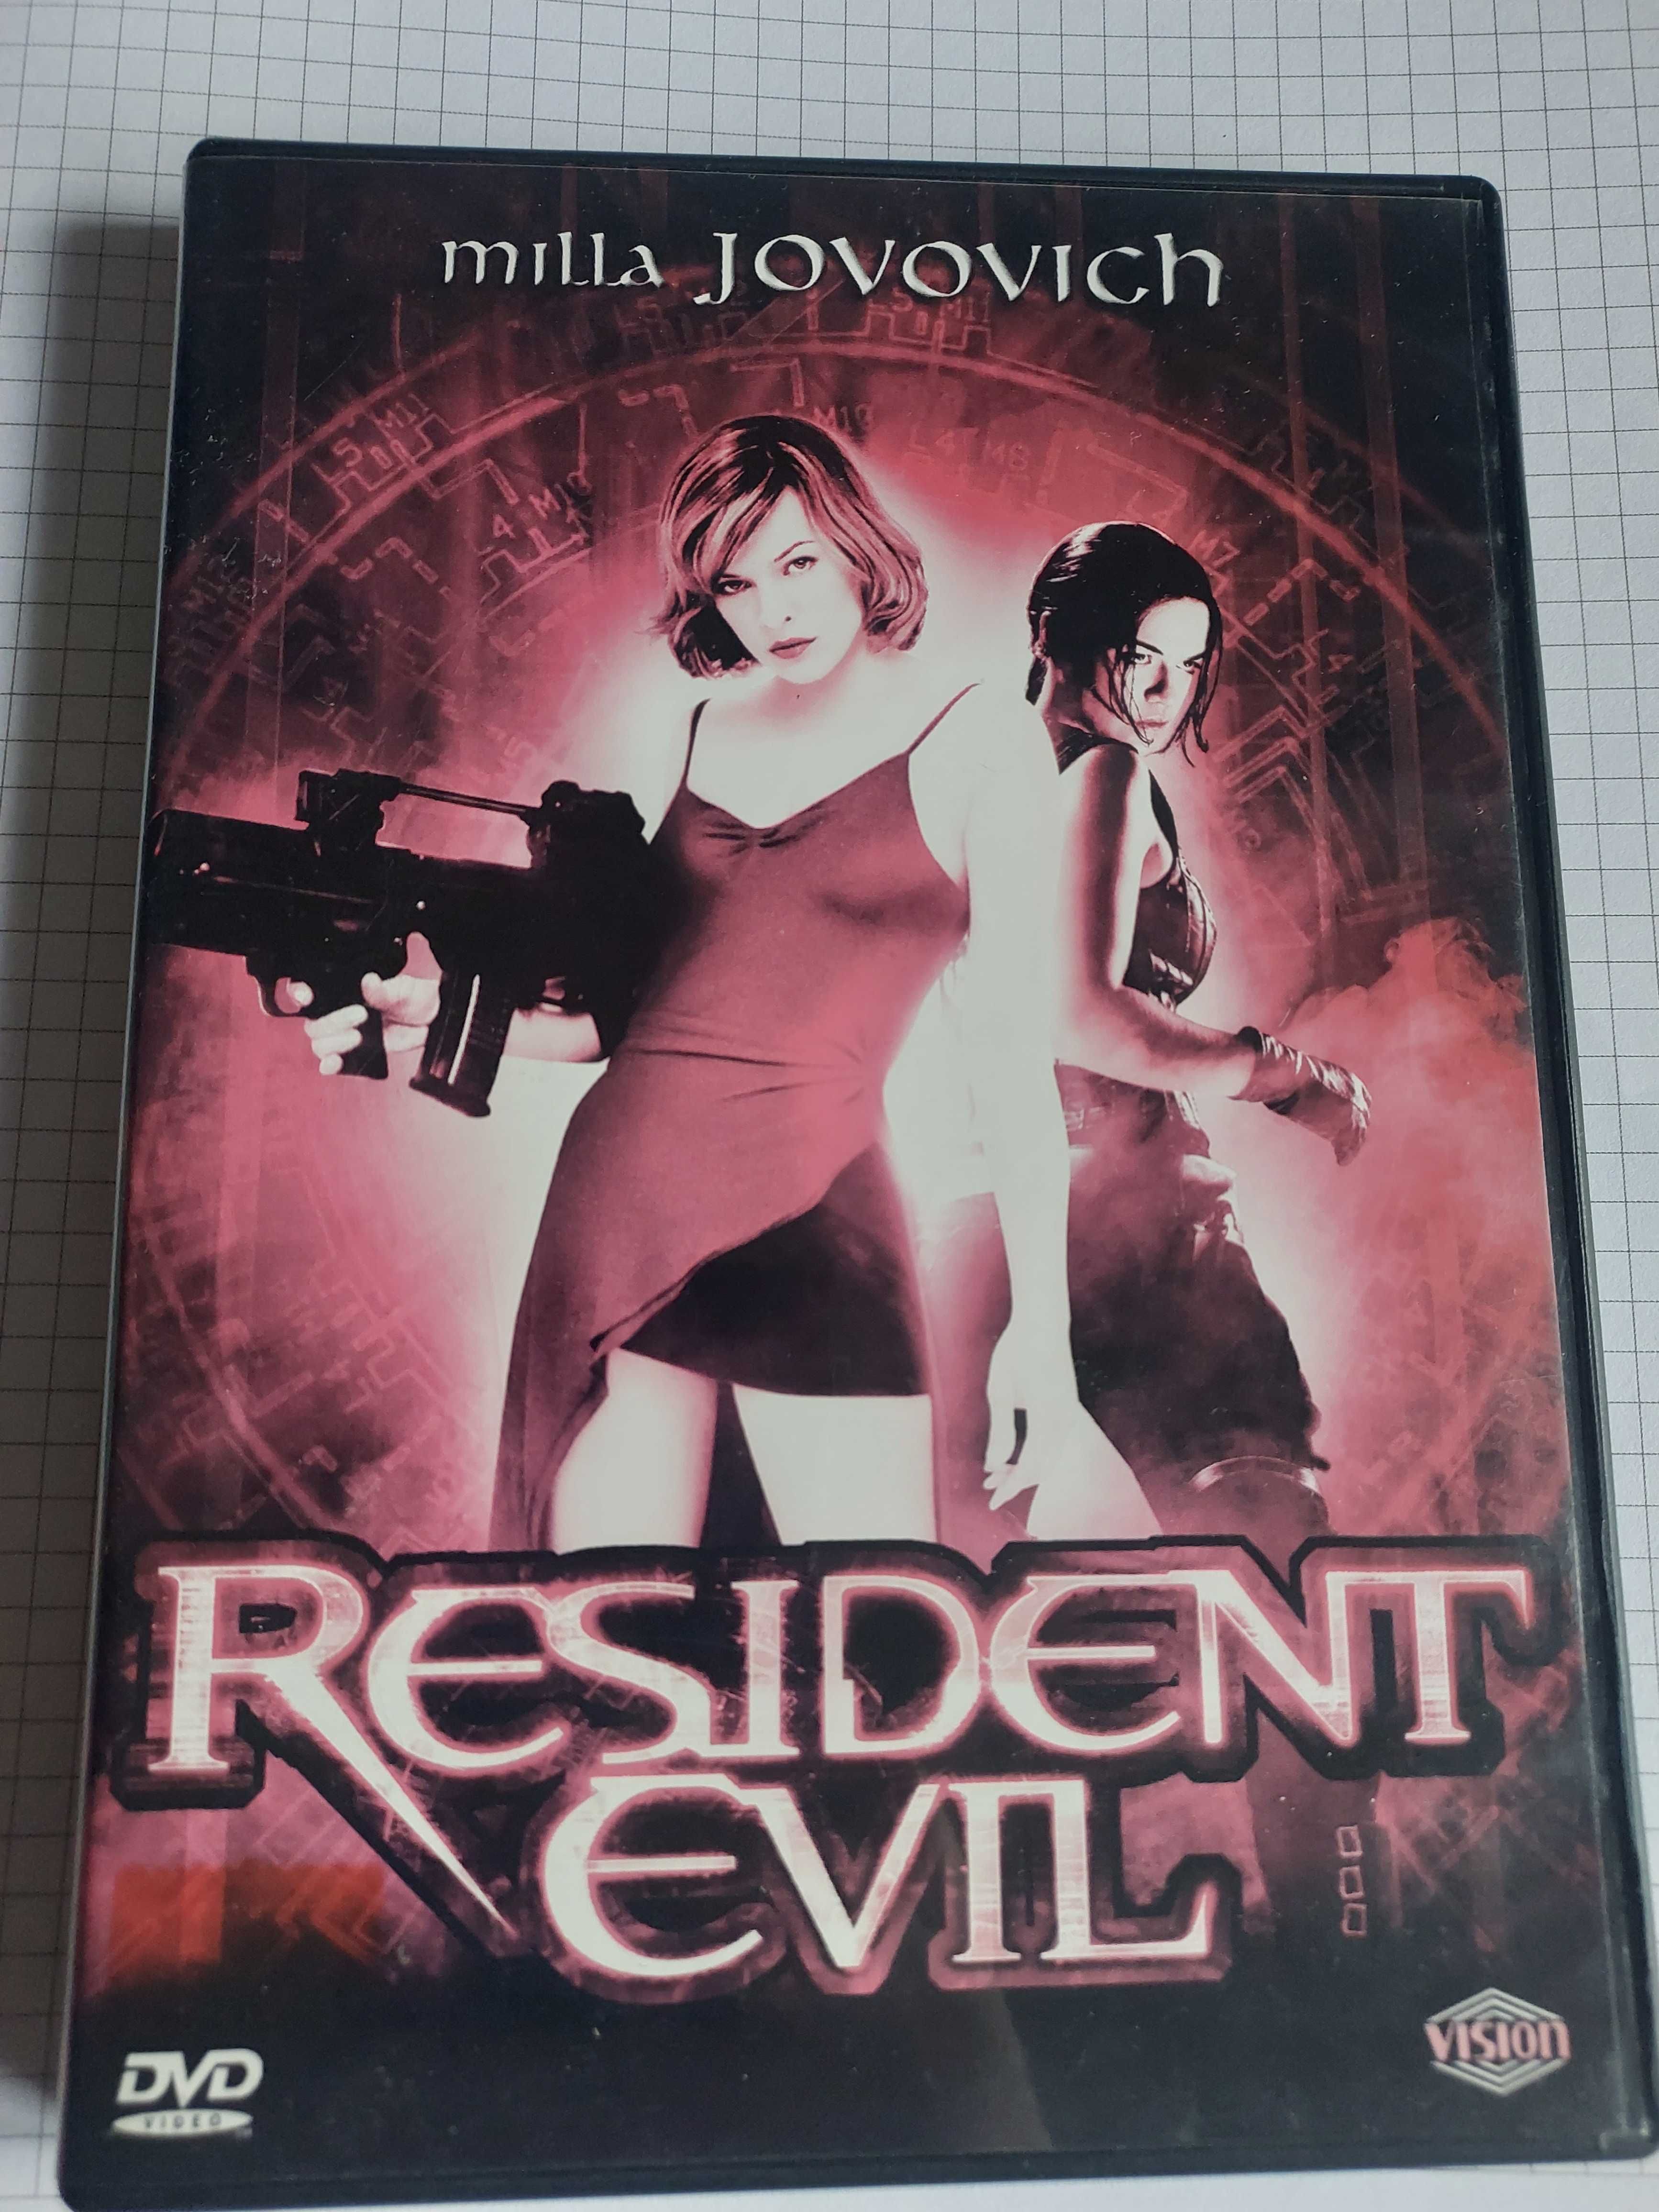 Resident evil film dvd